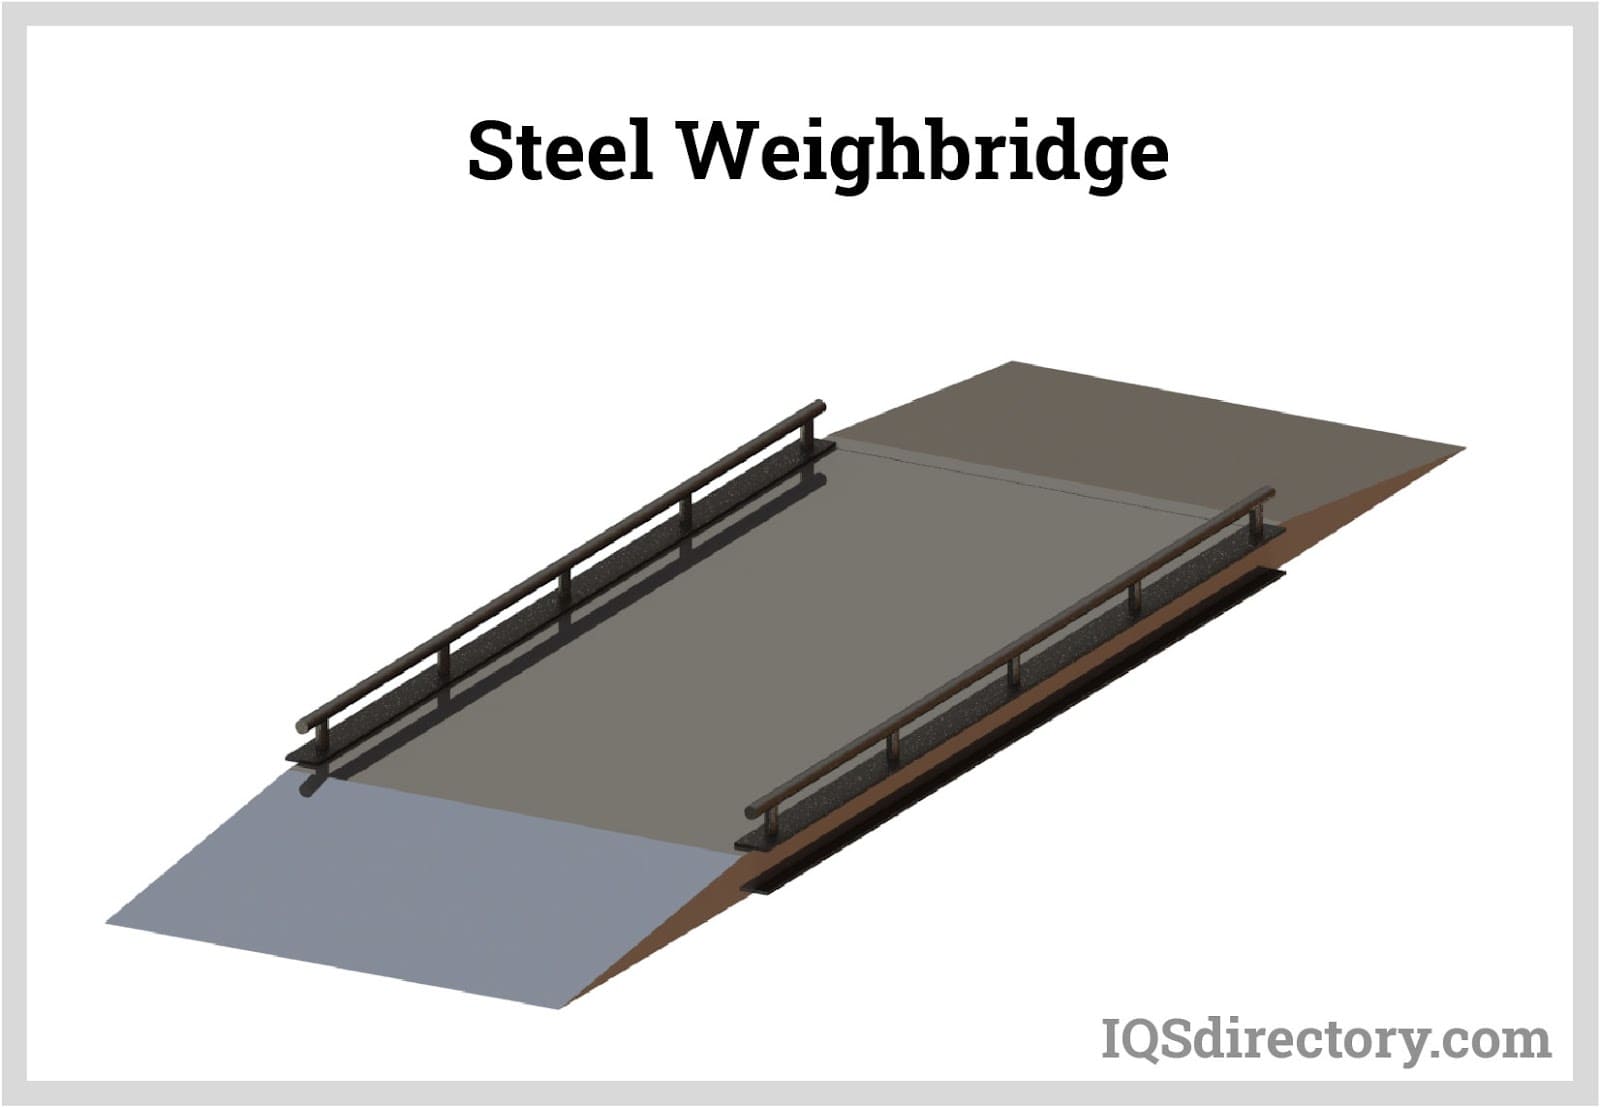 Steel Weighbridge